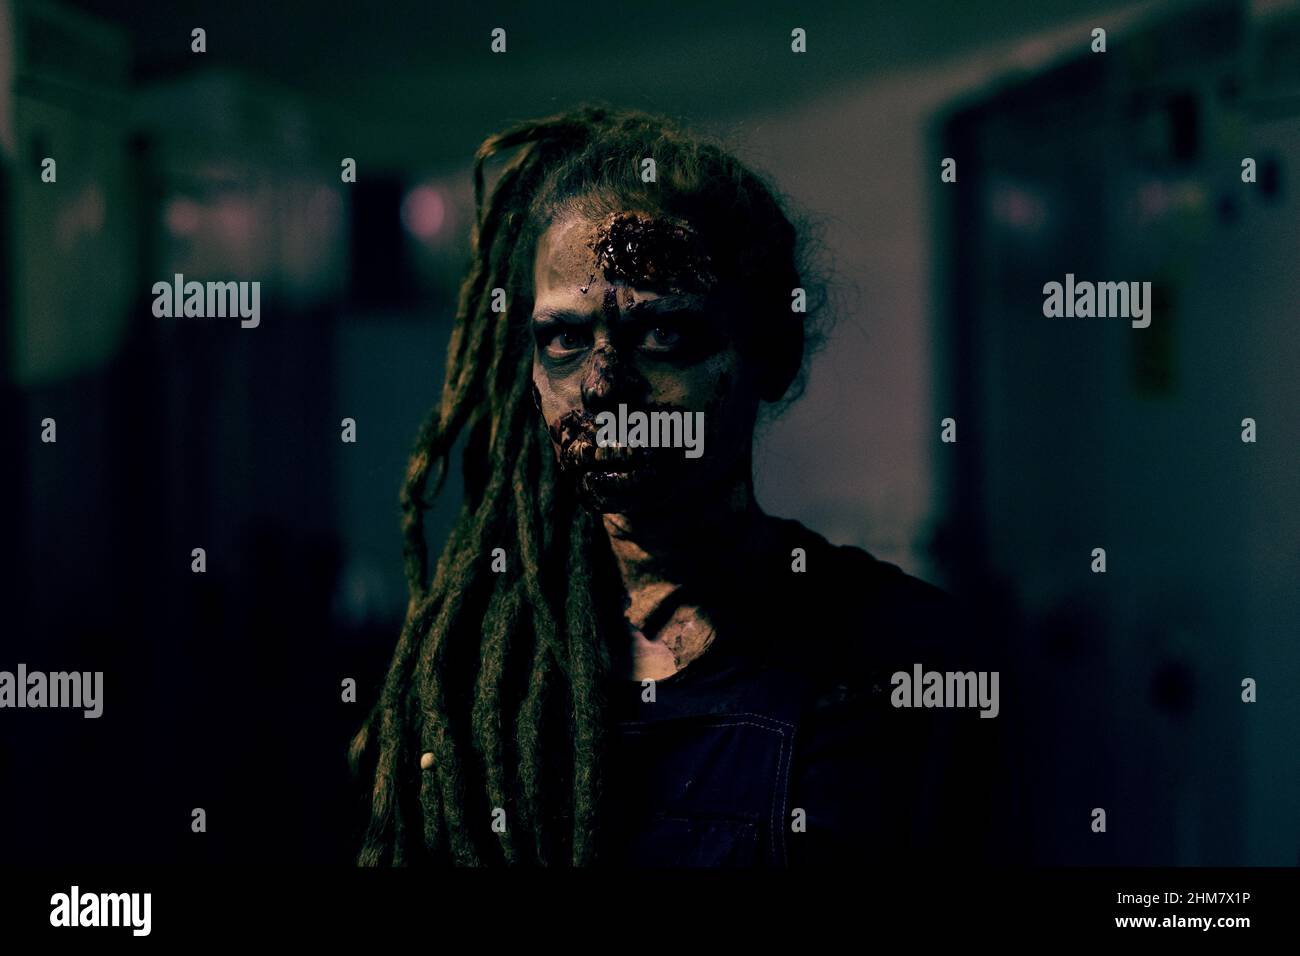 Frontansicht einer jungen Frau, die ein Zombie FX Make-up trägt und die Kamera im dunklen Raum ansieht, Kopierraum Stockfoto